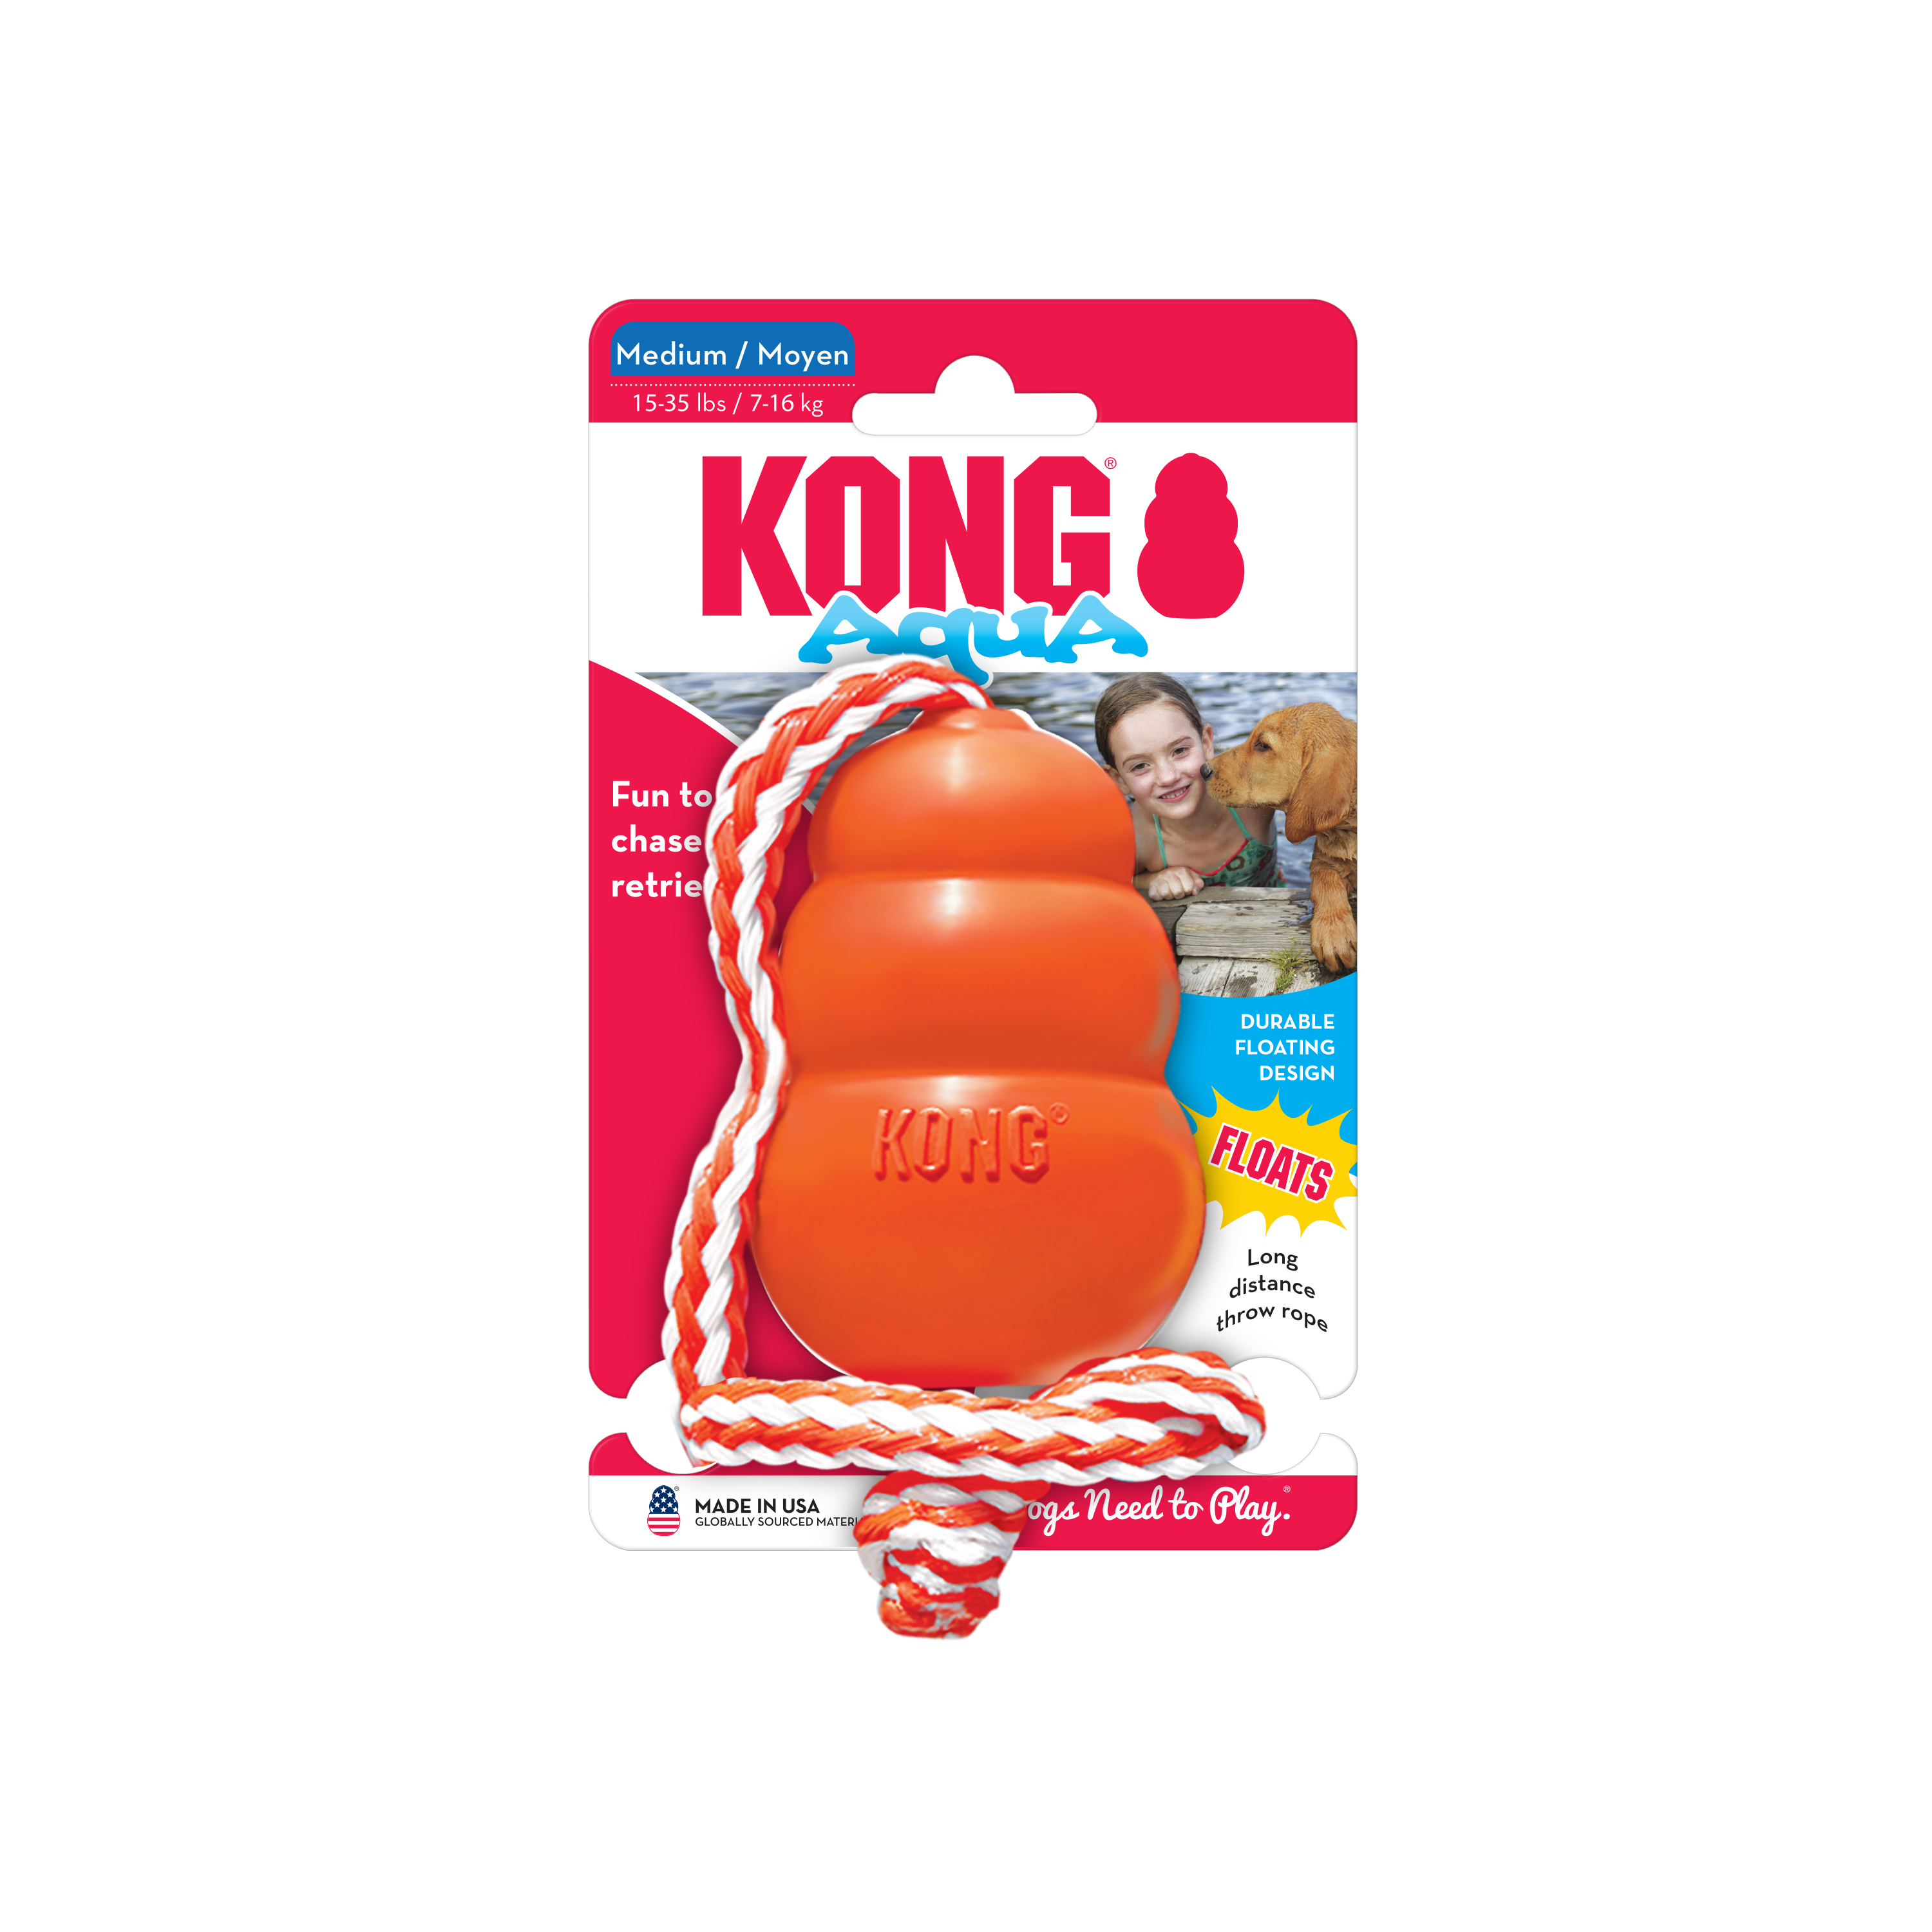 KONG Aqua onpack product image